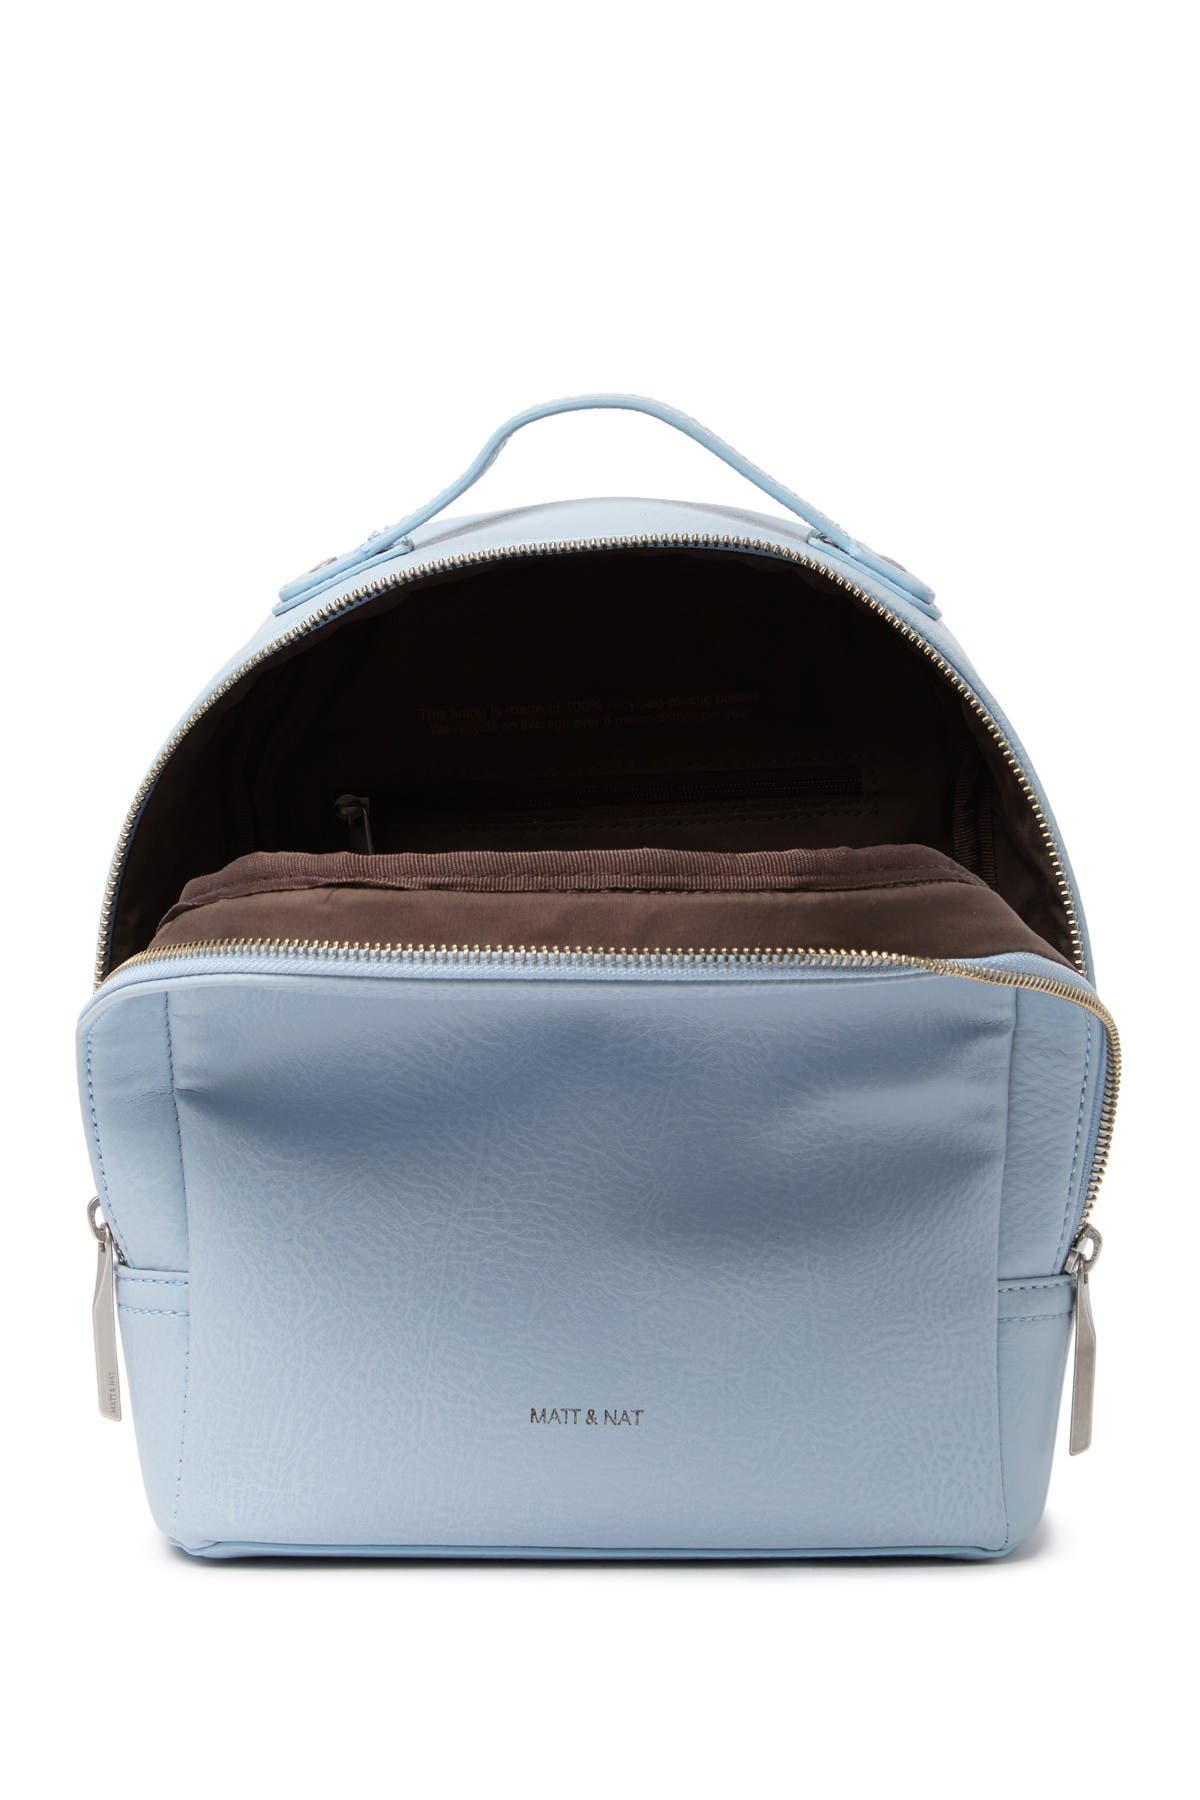 Matt & Nat | Olly Vegan Leather Mini Backpack | Nordstrom Rack